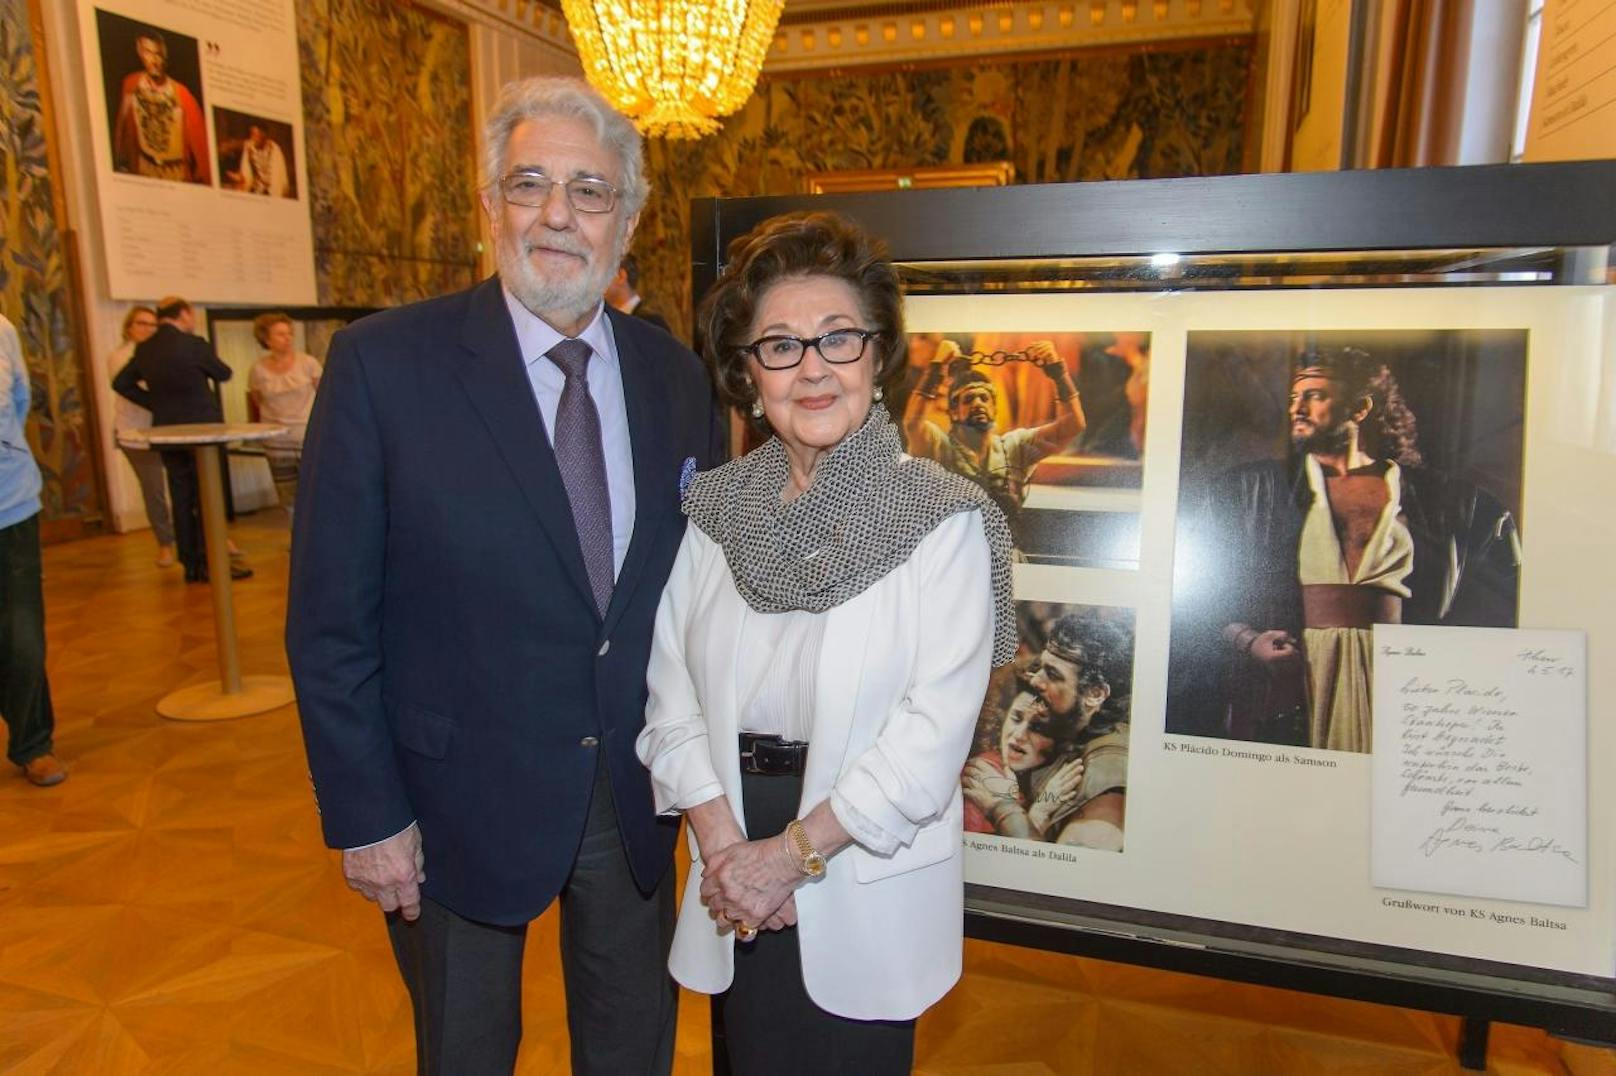 Ausstellungseröffnung 50 Jahre Placido Domingo,
Wiener Staatsoper, Wien, 17.5.2017,
Placido DOMINGO mit Ehefrau Marta